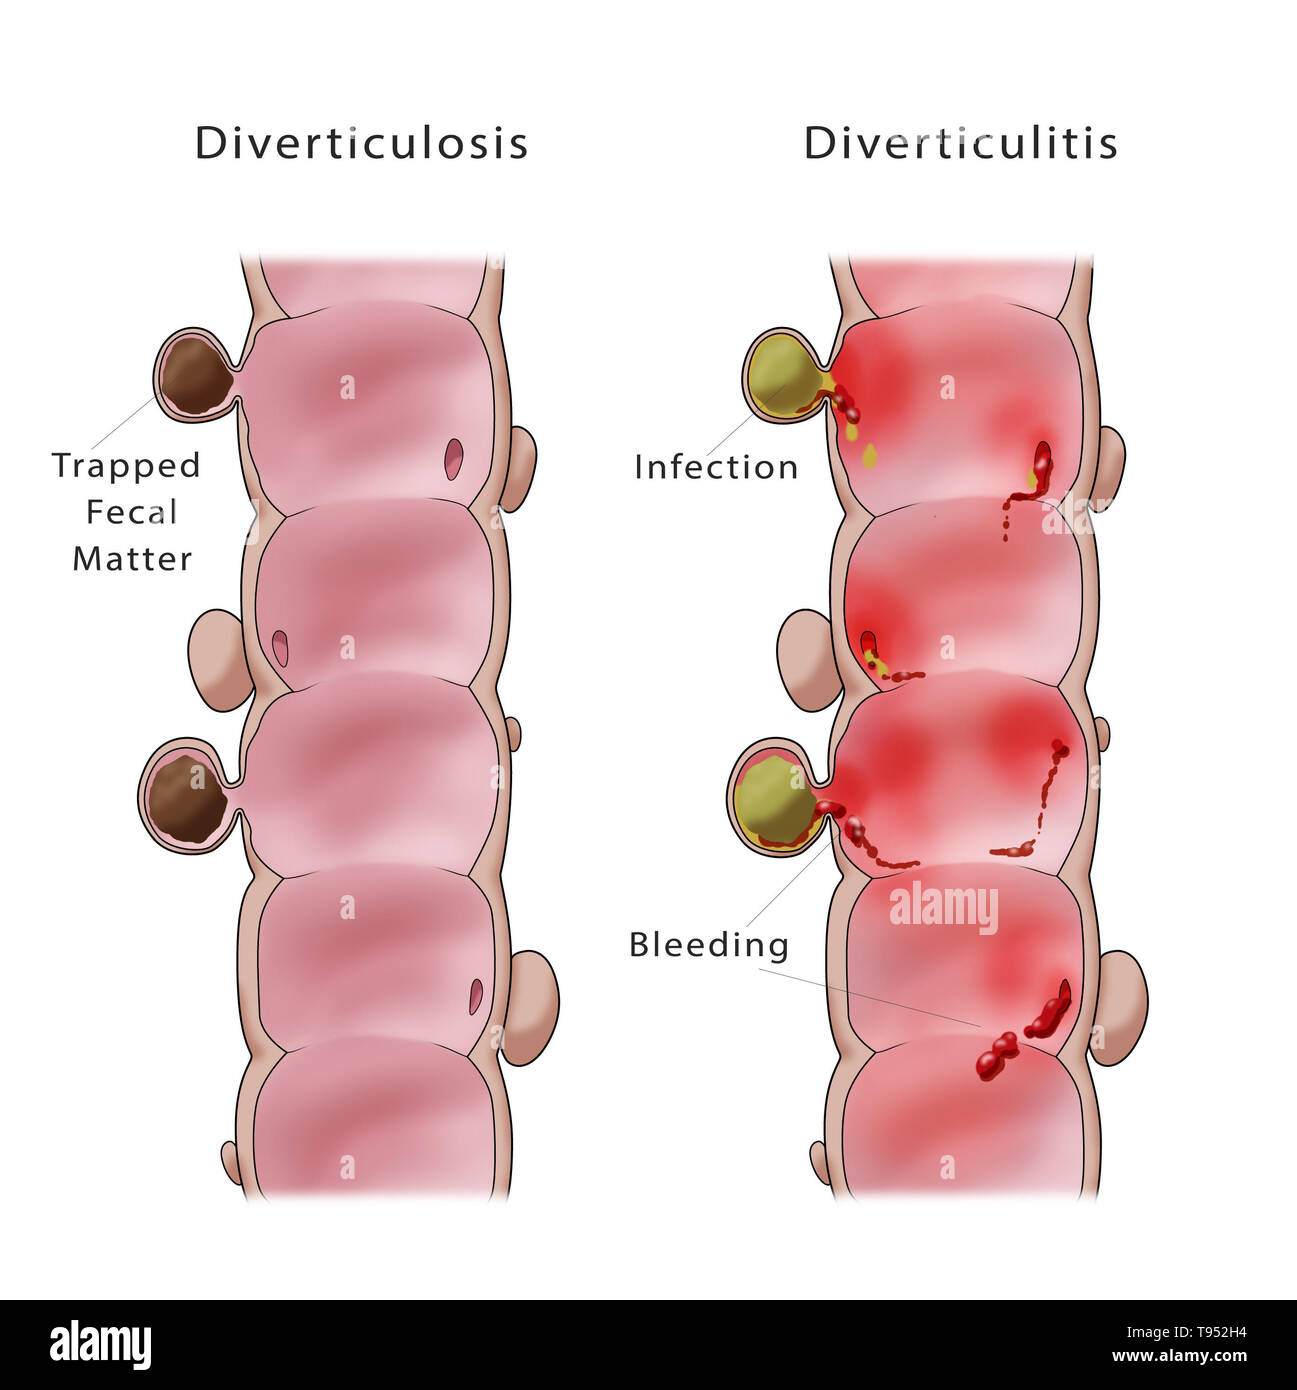 Abbildung: Vergleich von einem Doppelpunkt mit diverticulosis Diverticulitis (links) und (rechts). Stockfoto